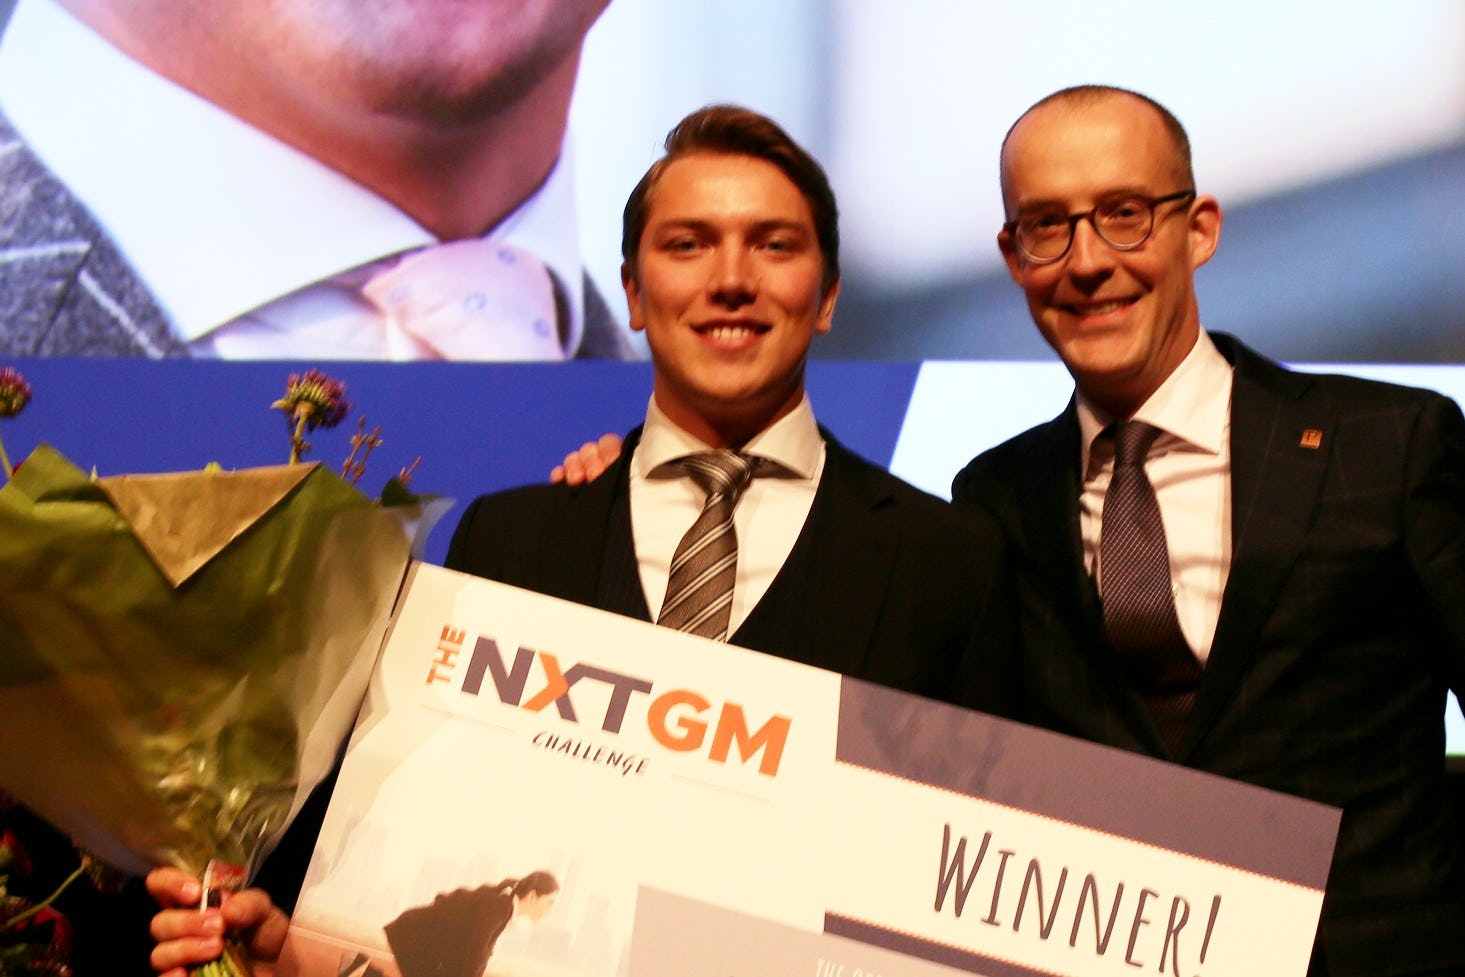 Justus van Dam wint baan als general manager in Nxt GM Challenge